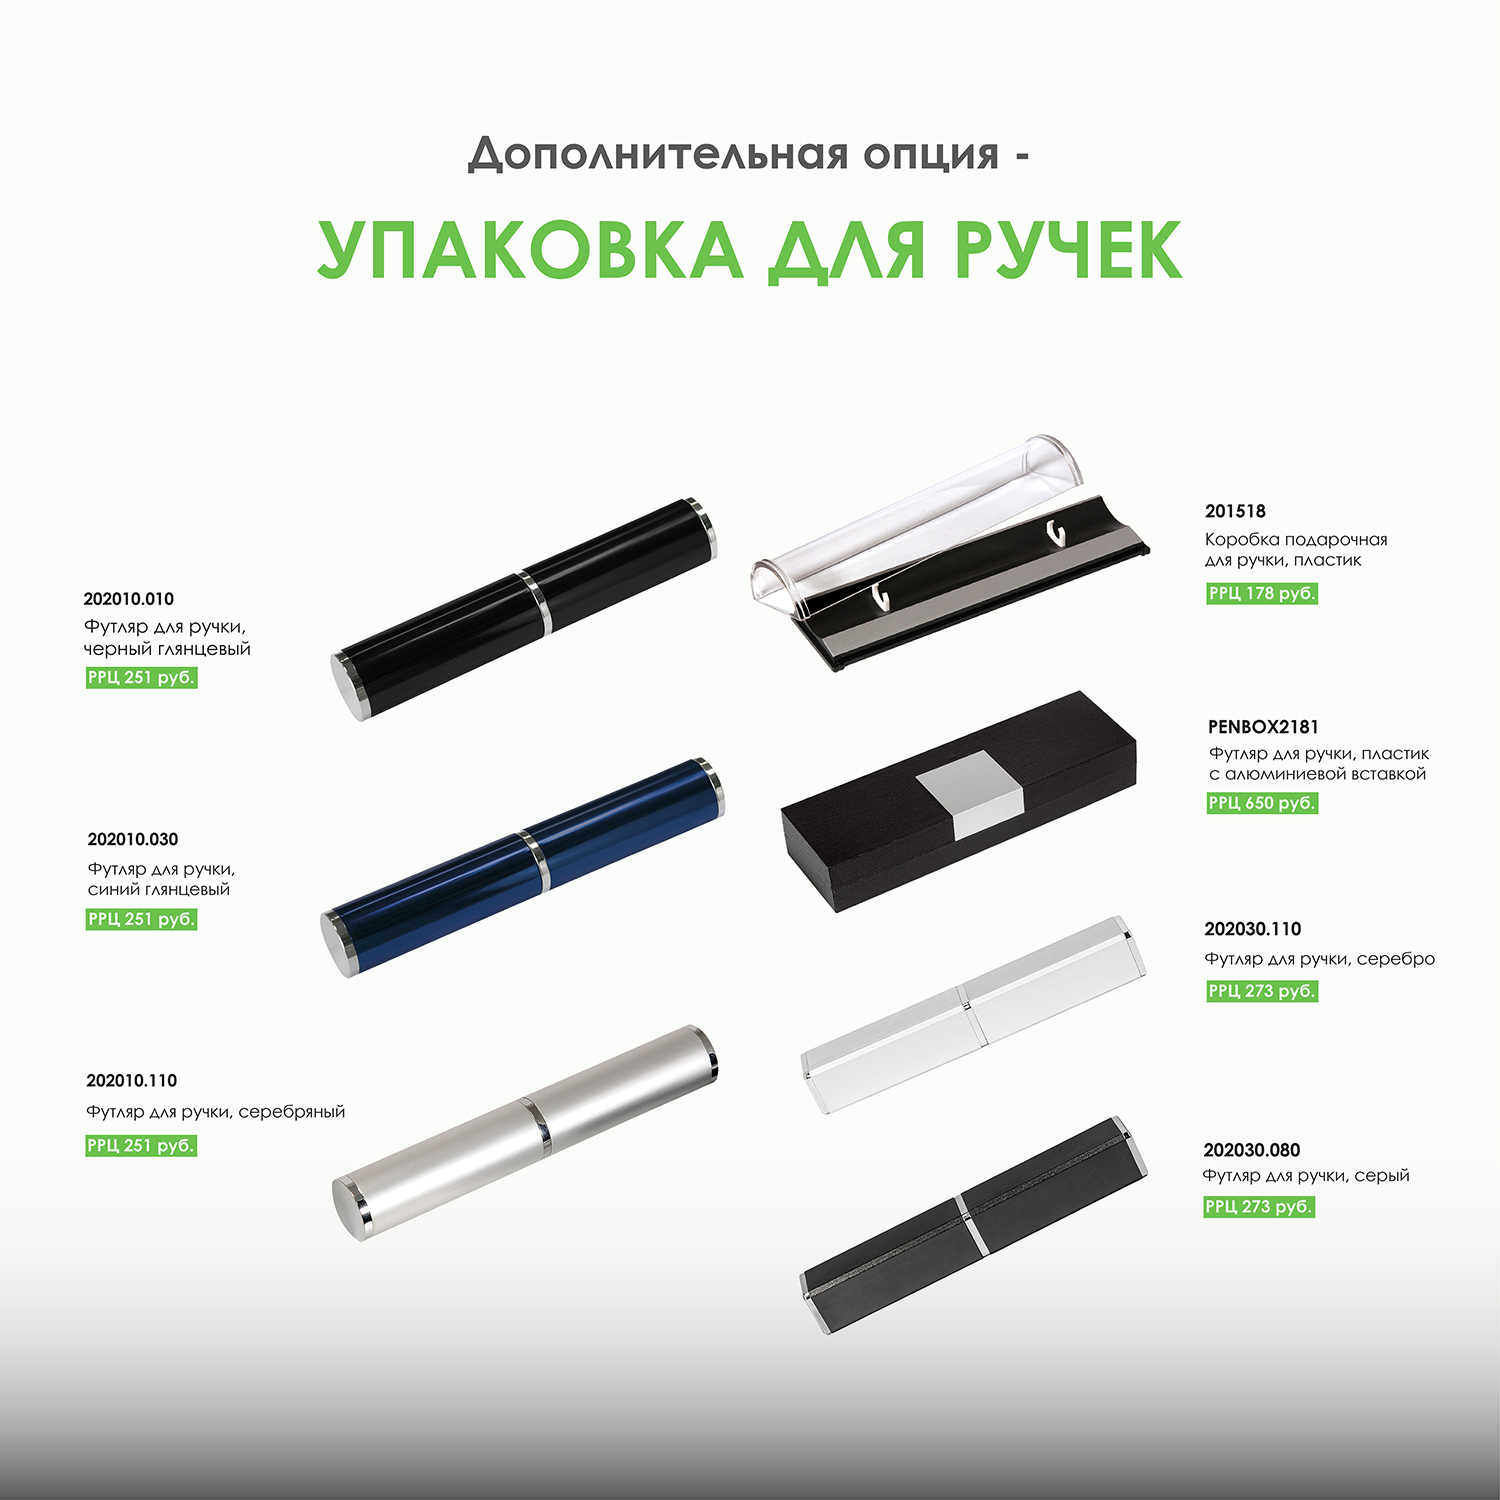 Шариковая ручка Arctic, белая/зеленая